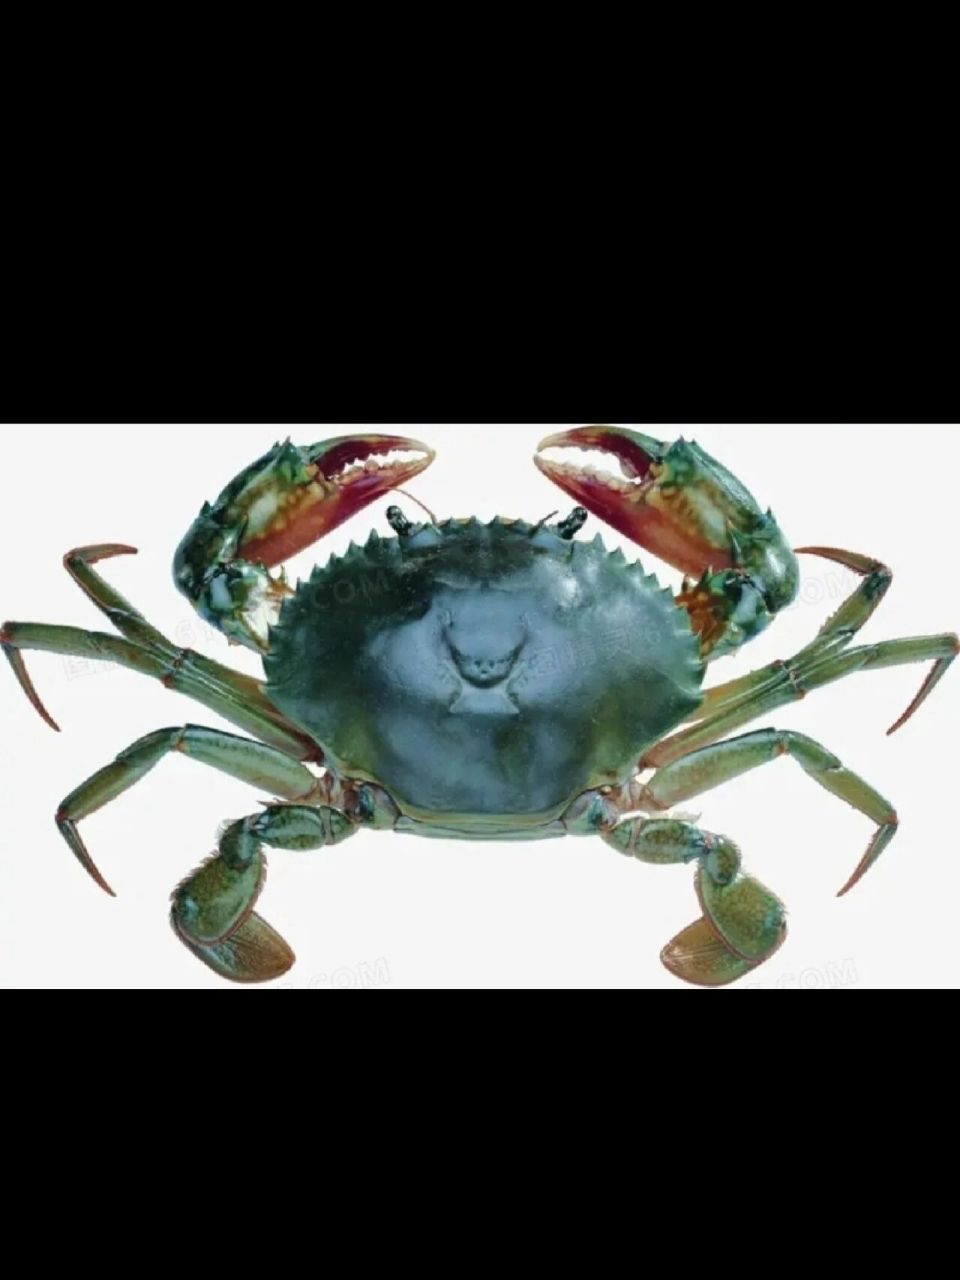 螃蟹有几条腿 大家都知道螃蟹有八条腿,但是不包括前面的一对大螯哦!